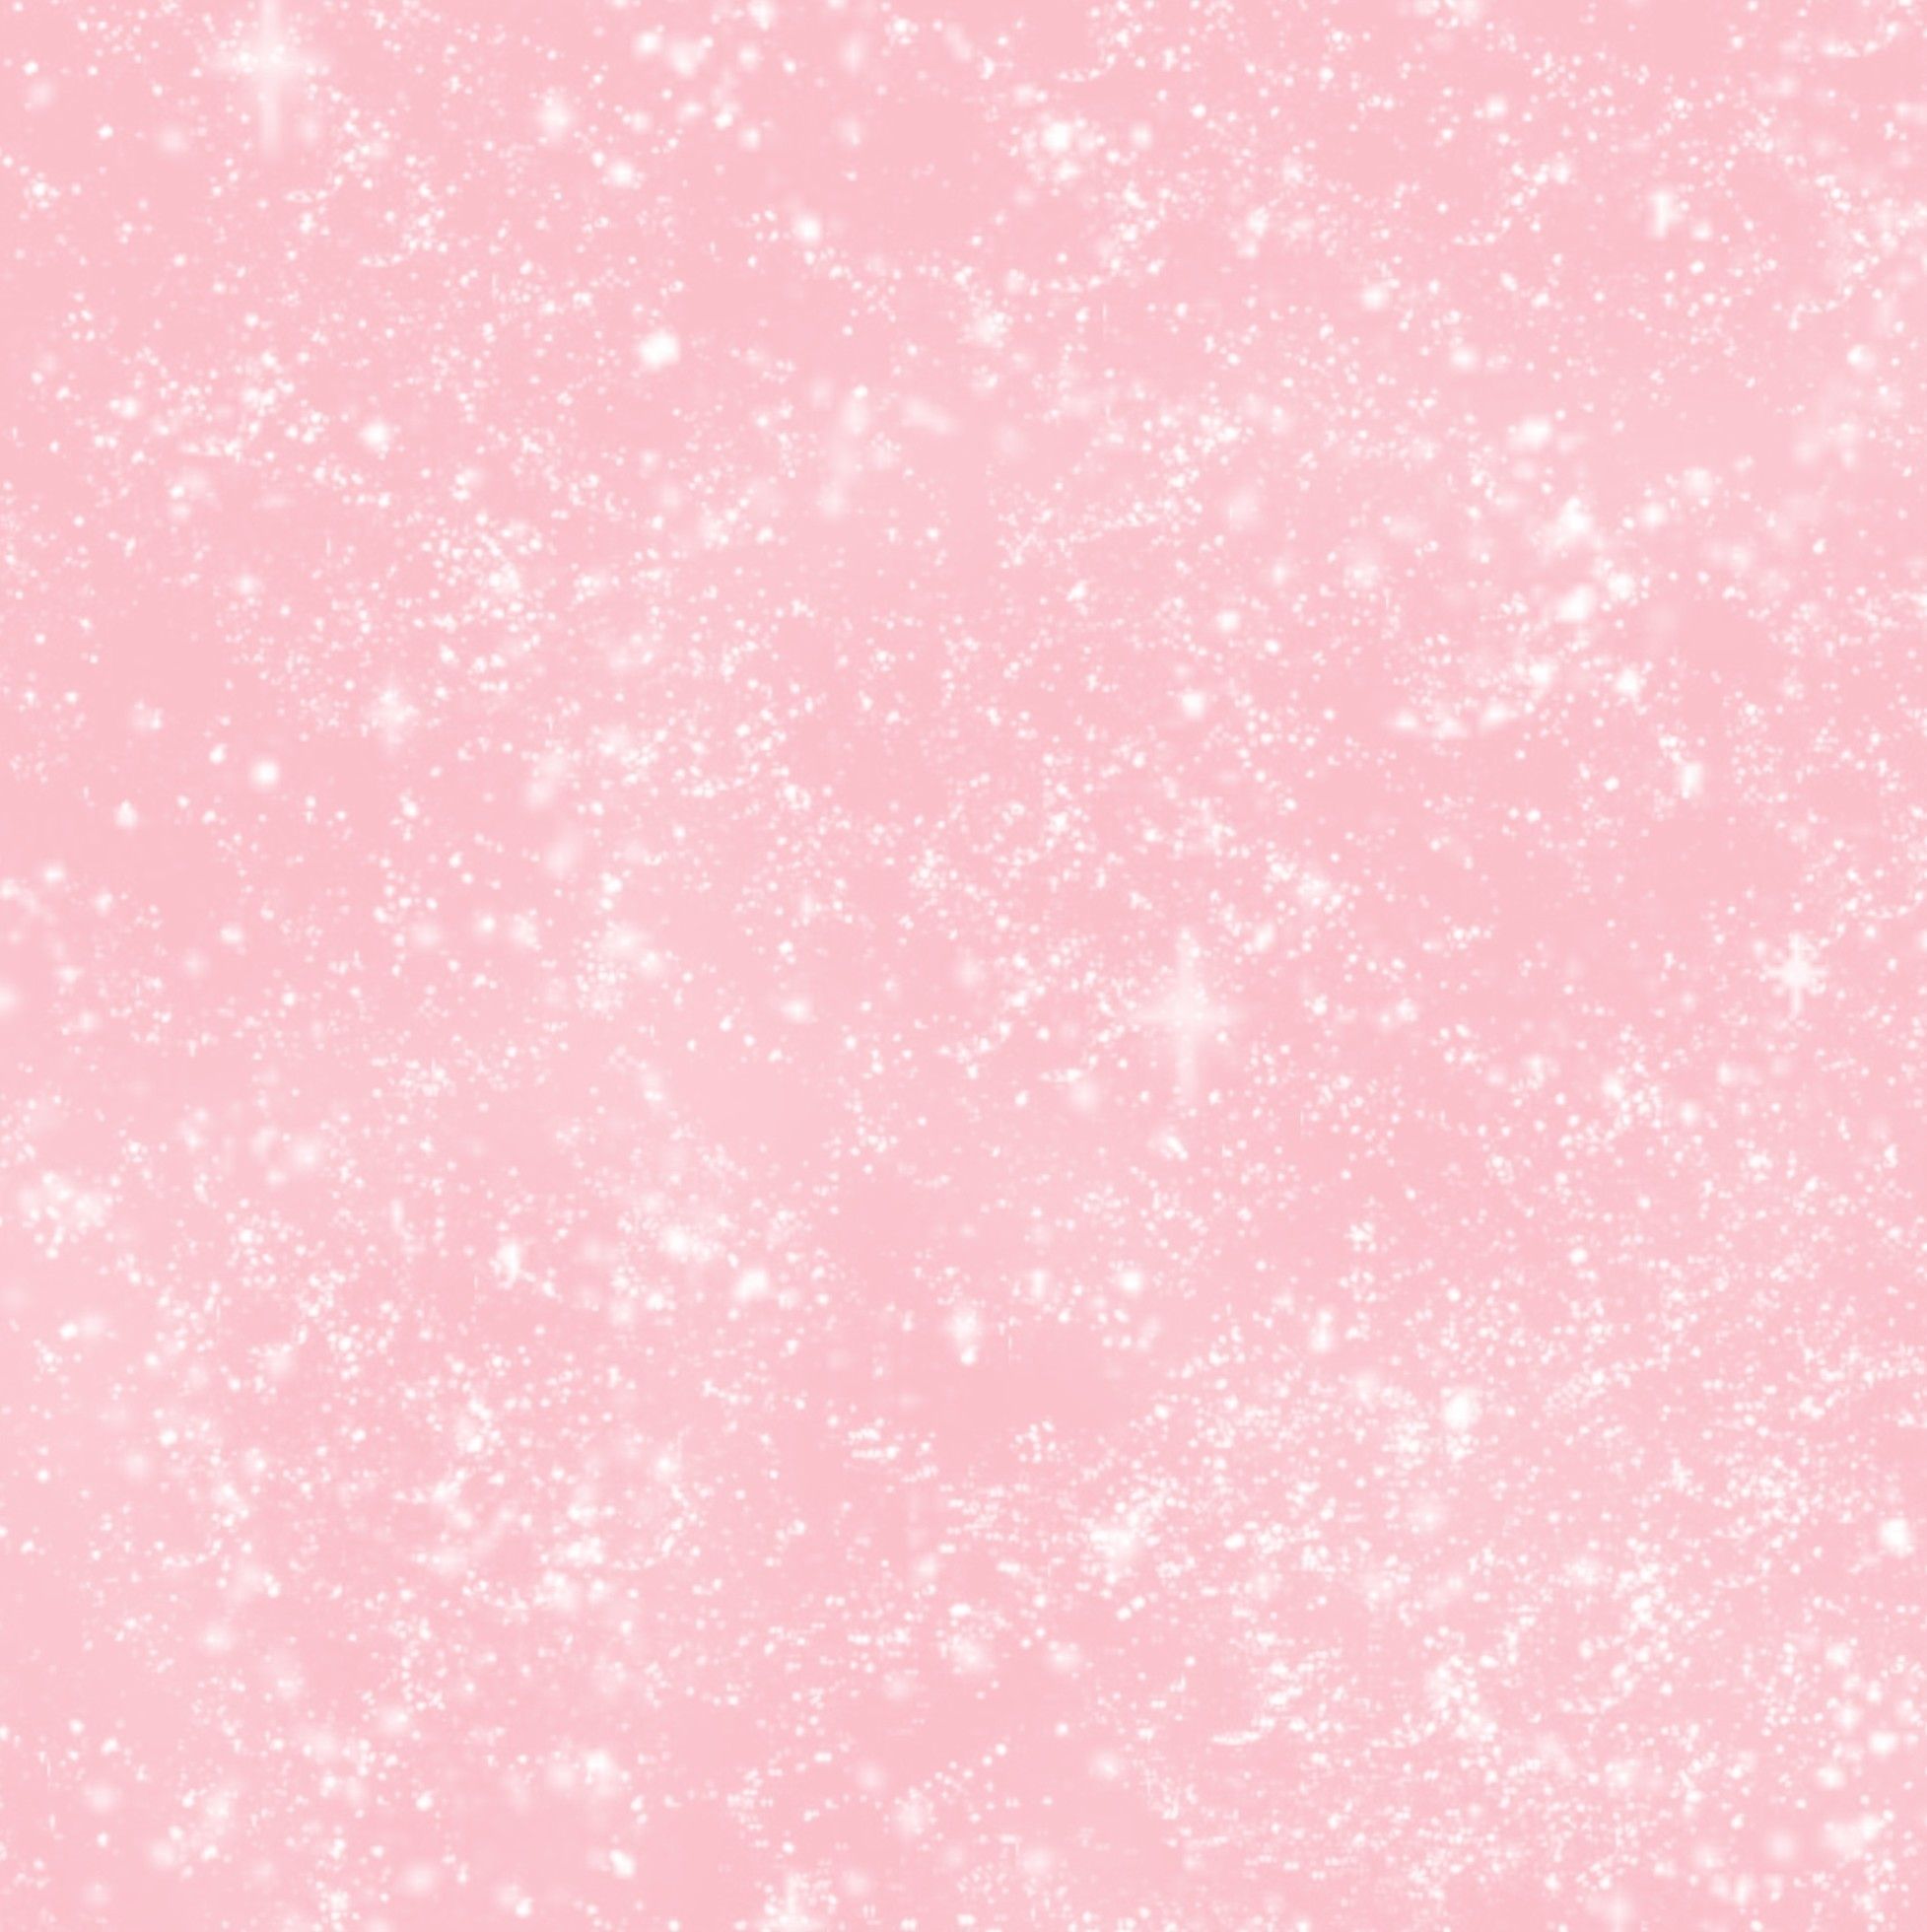 Tumblr Pink Wallpaper Free Tumblr Pink Background